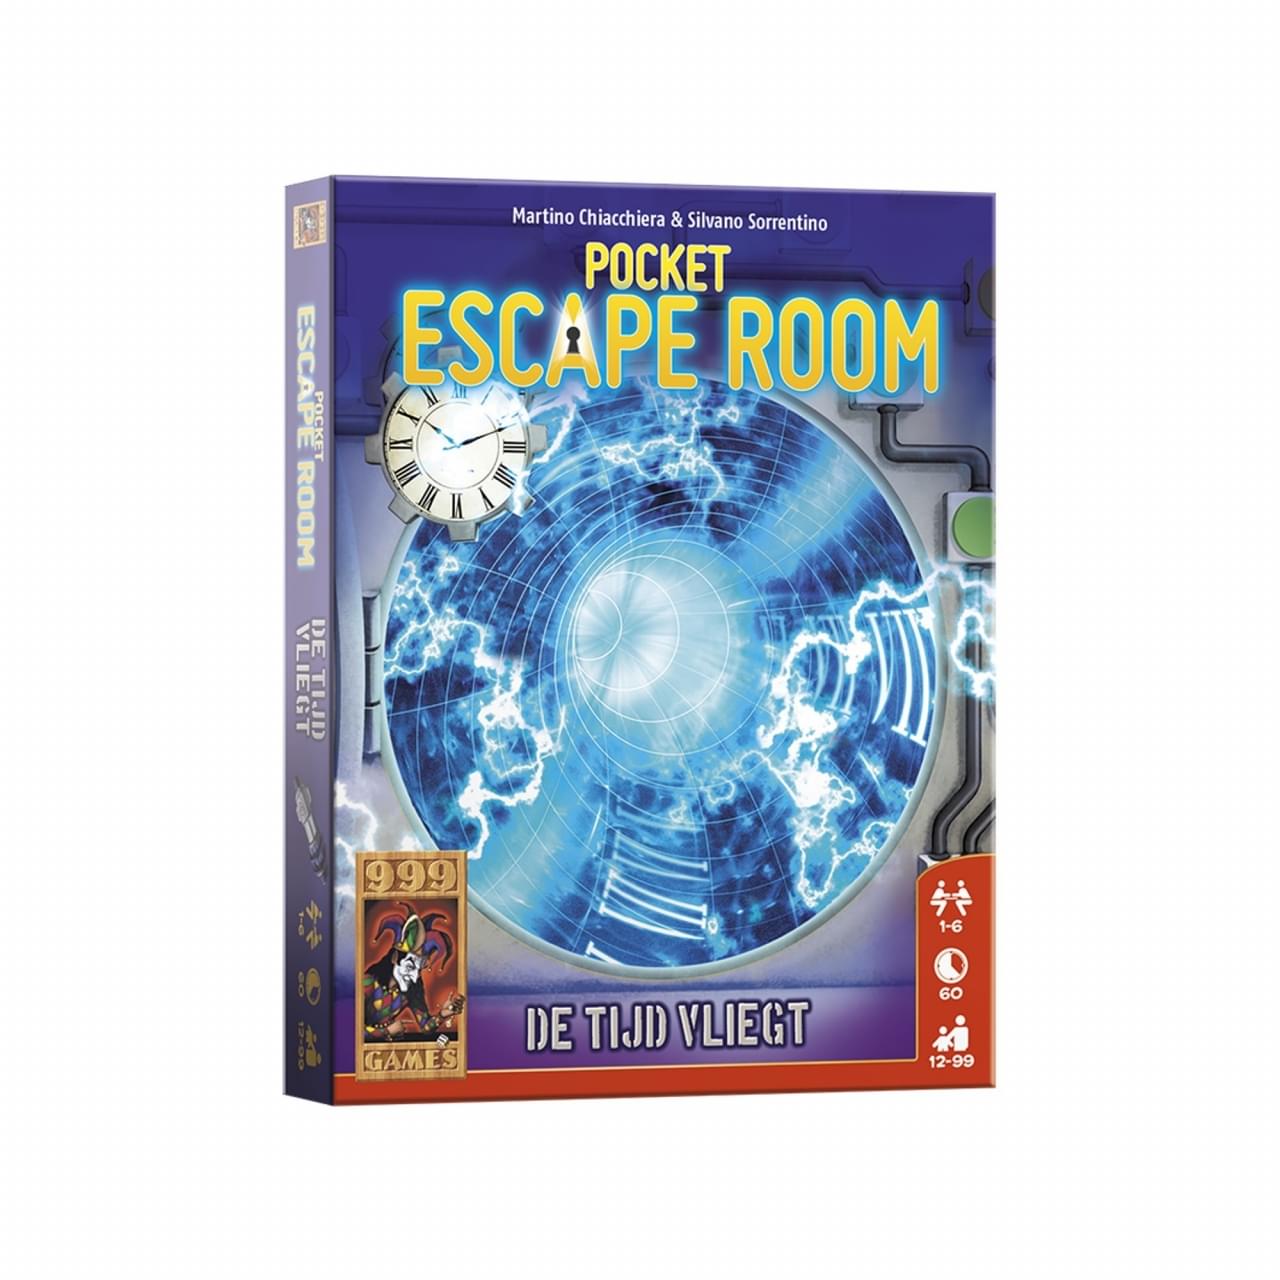 999 Games Pocket Escape Room De Tijd Vliegt